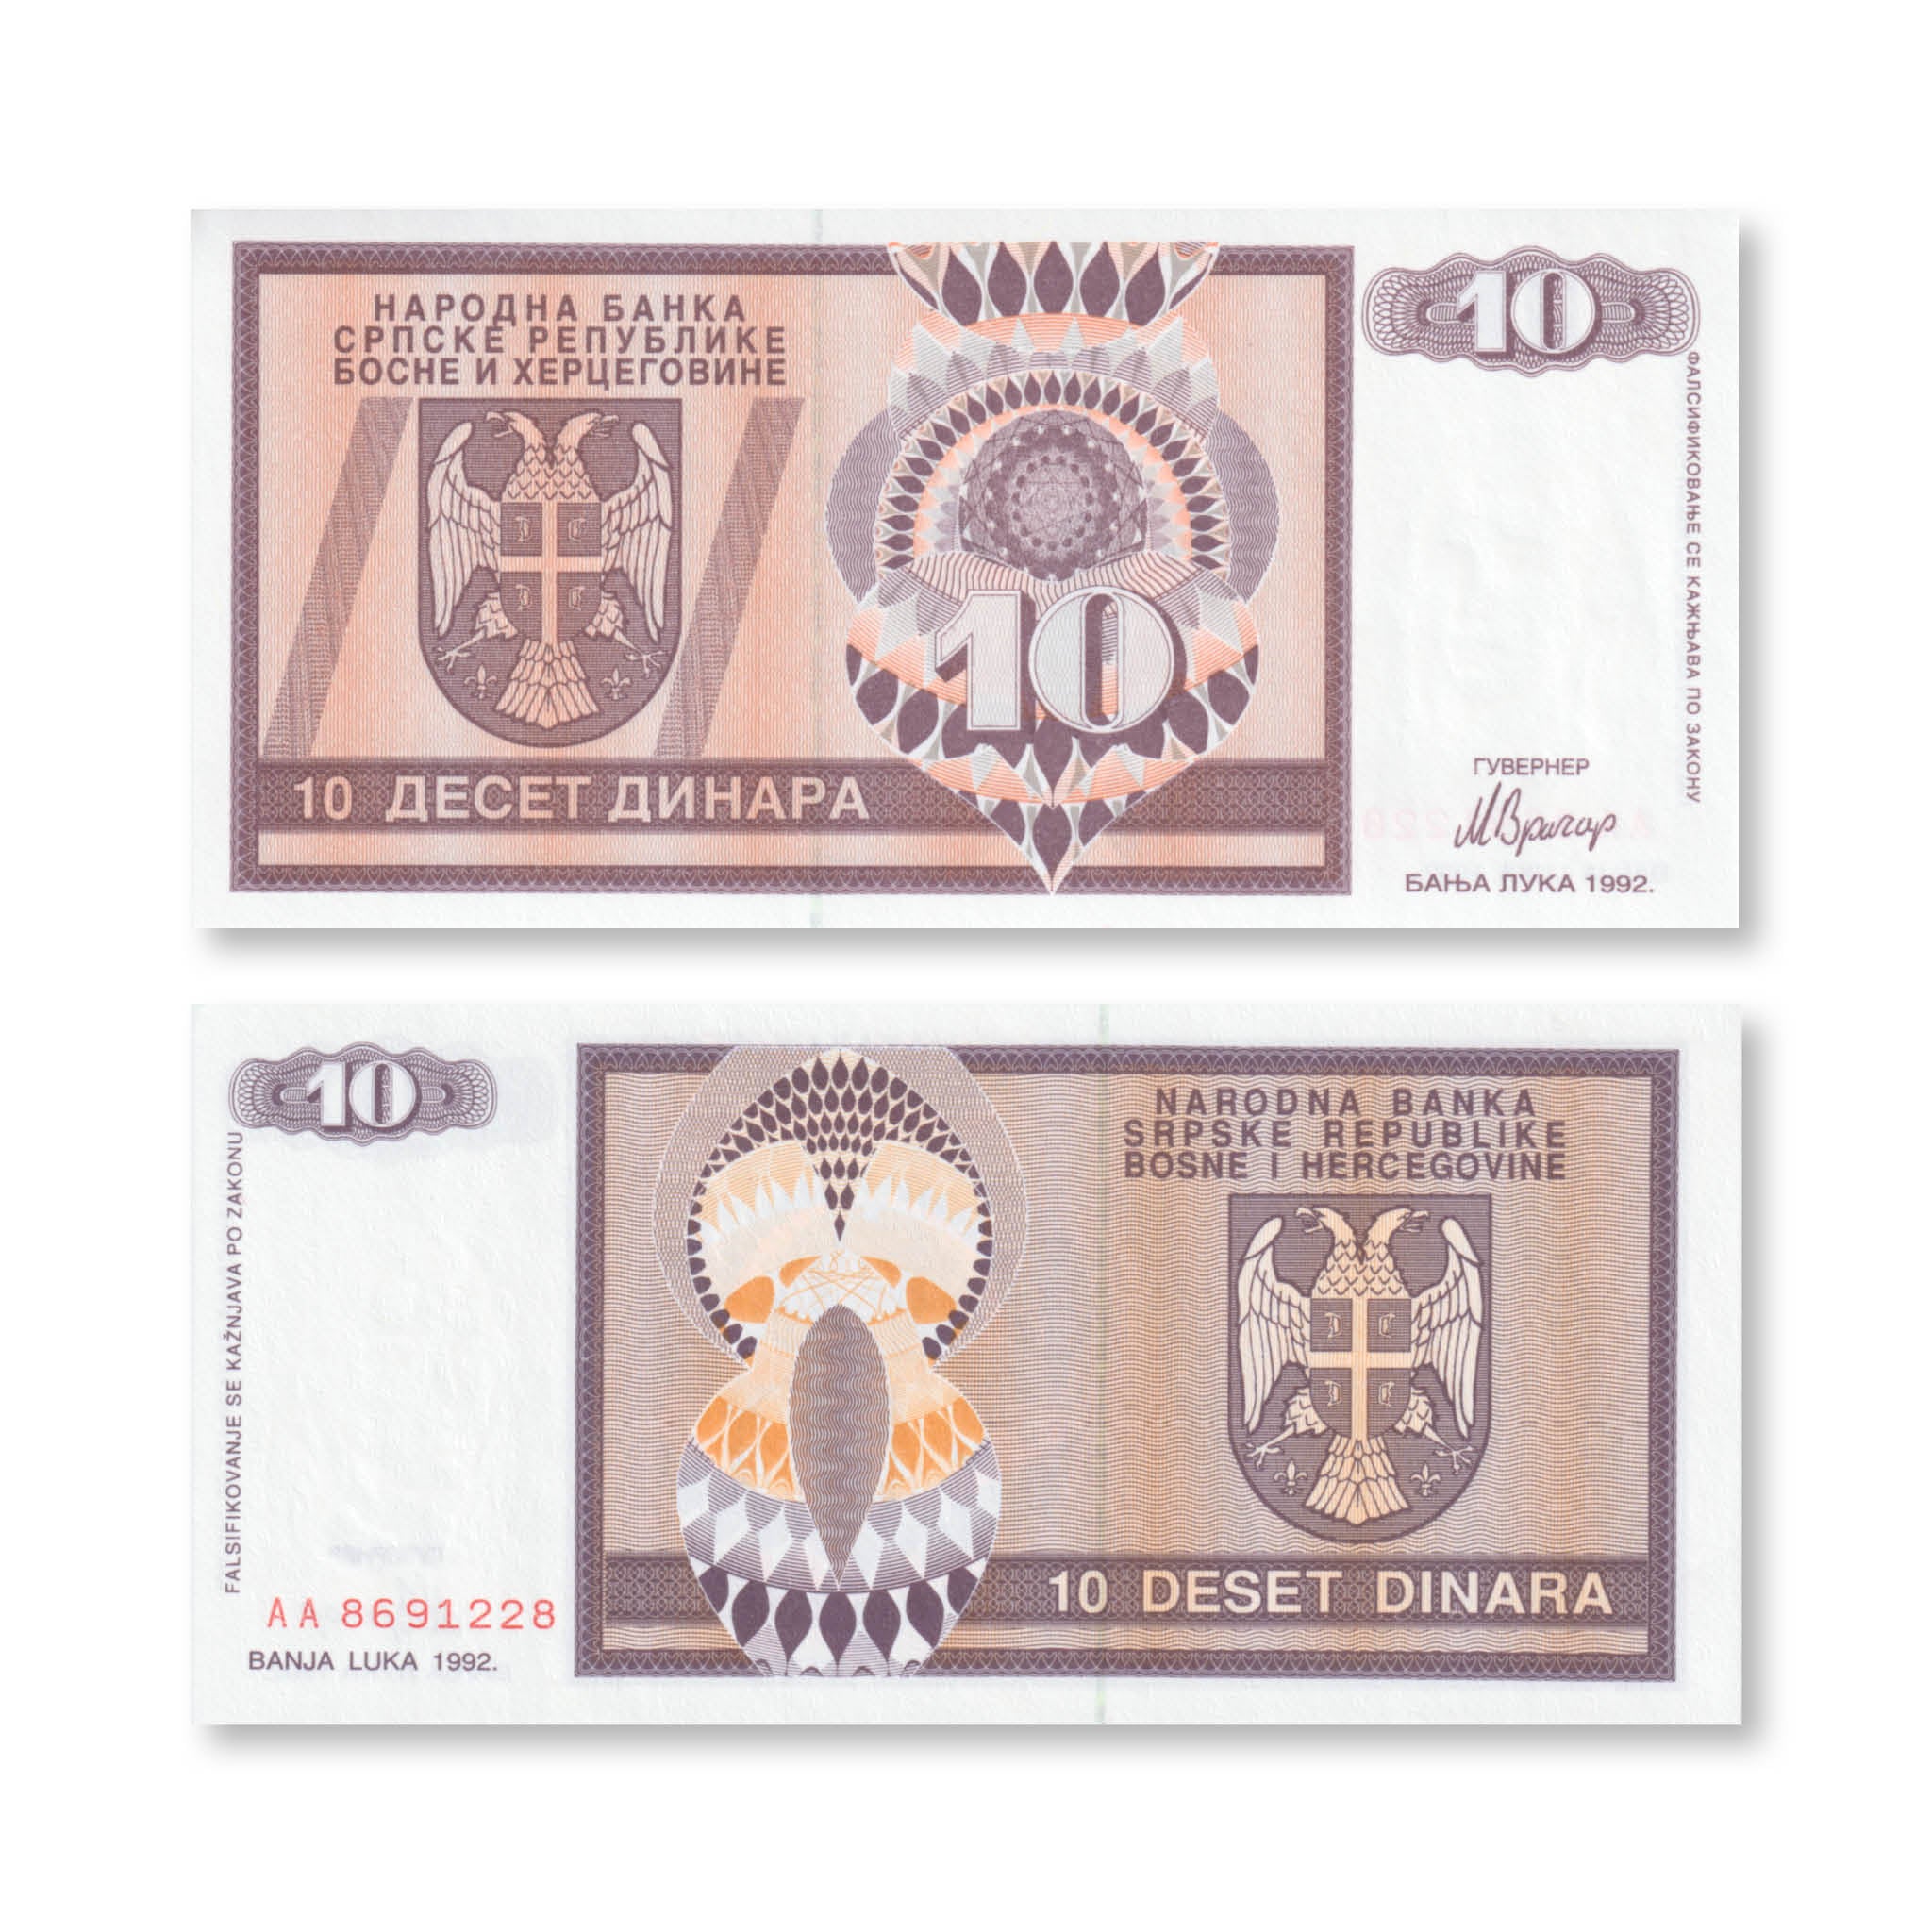 Republika Srpska 10 Dinars, 1992, B101a, P133a, UNC - Robert's World Money - World Banknotes